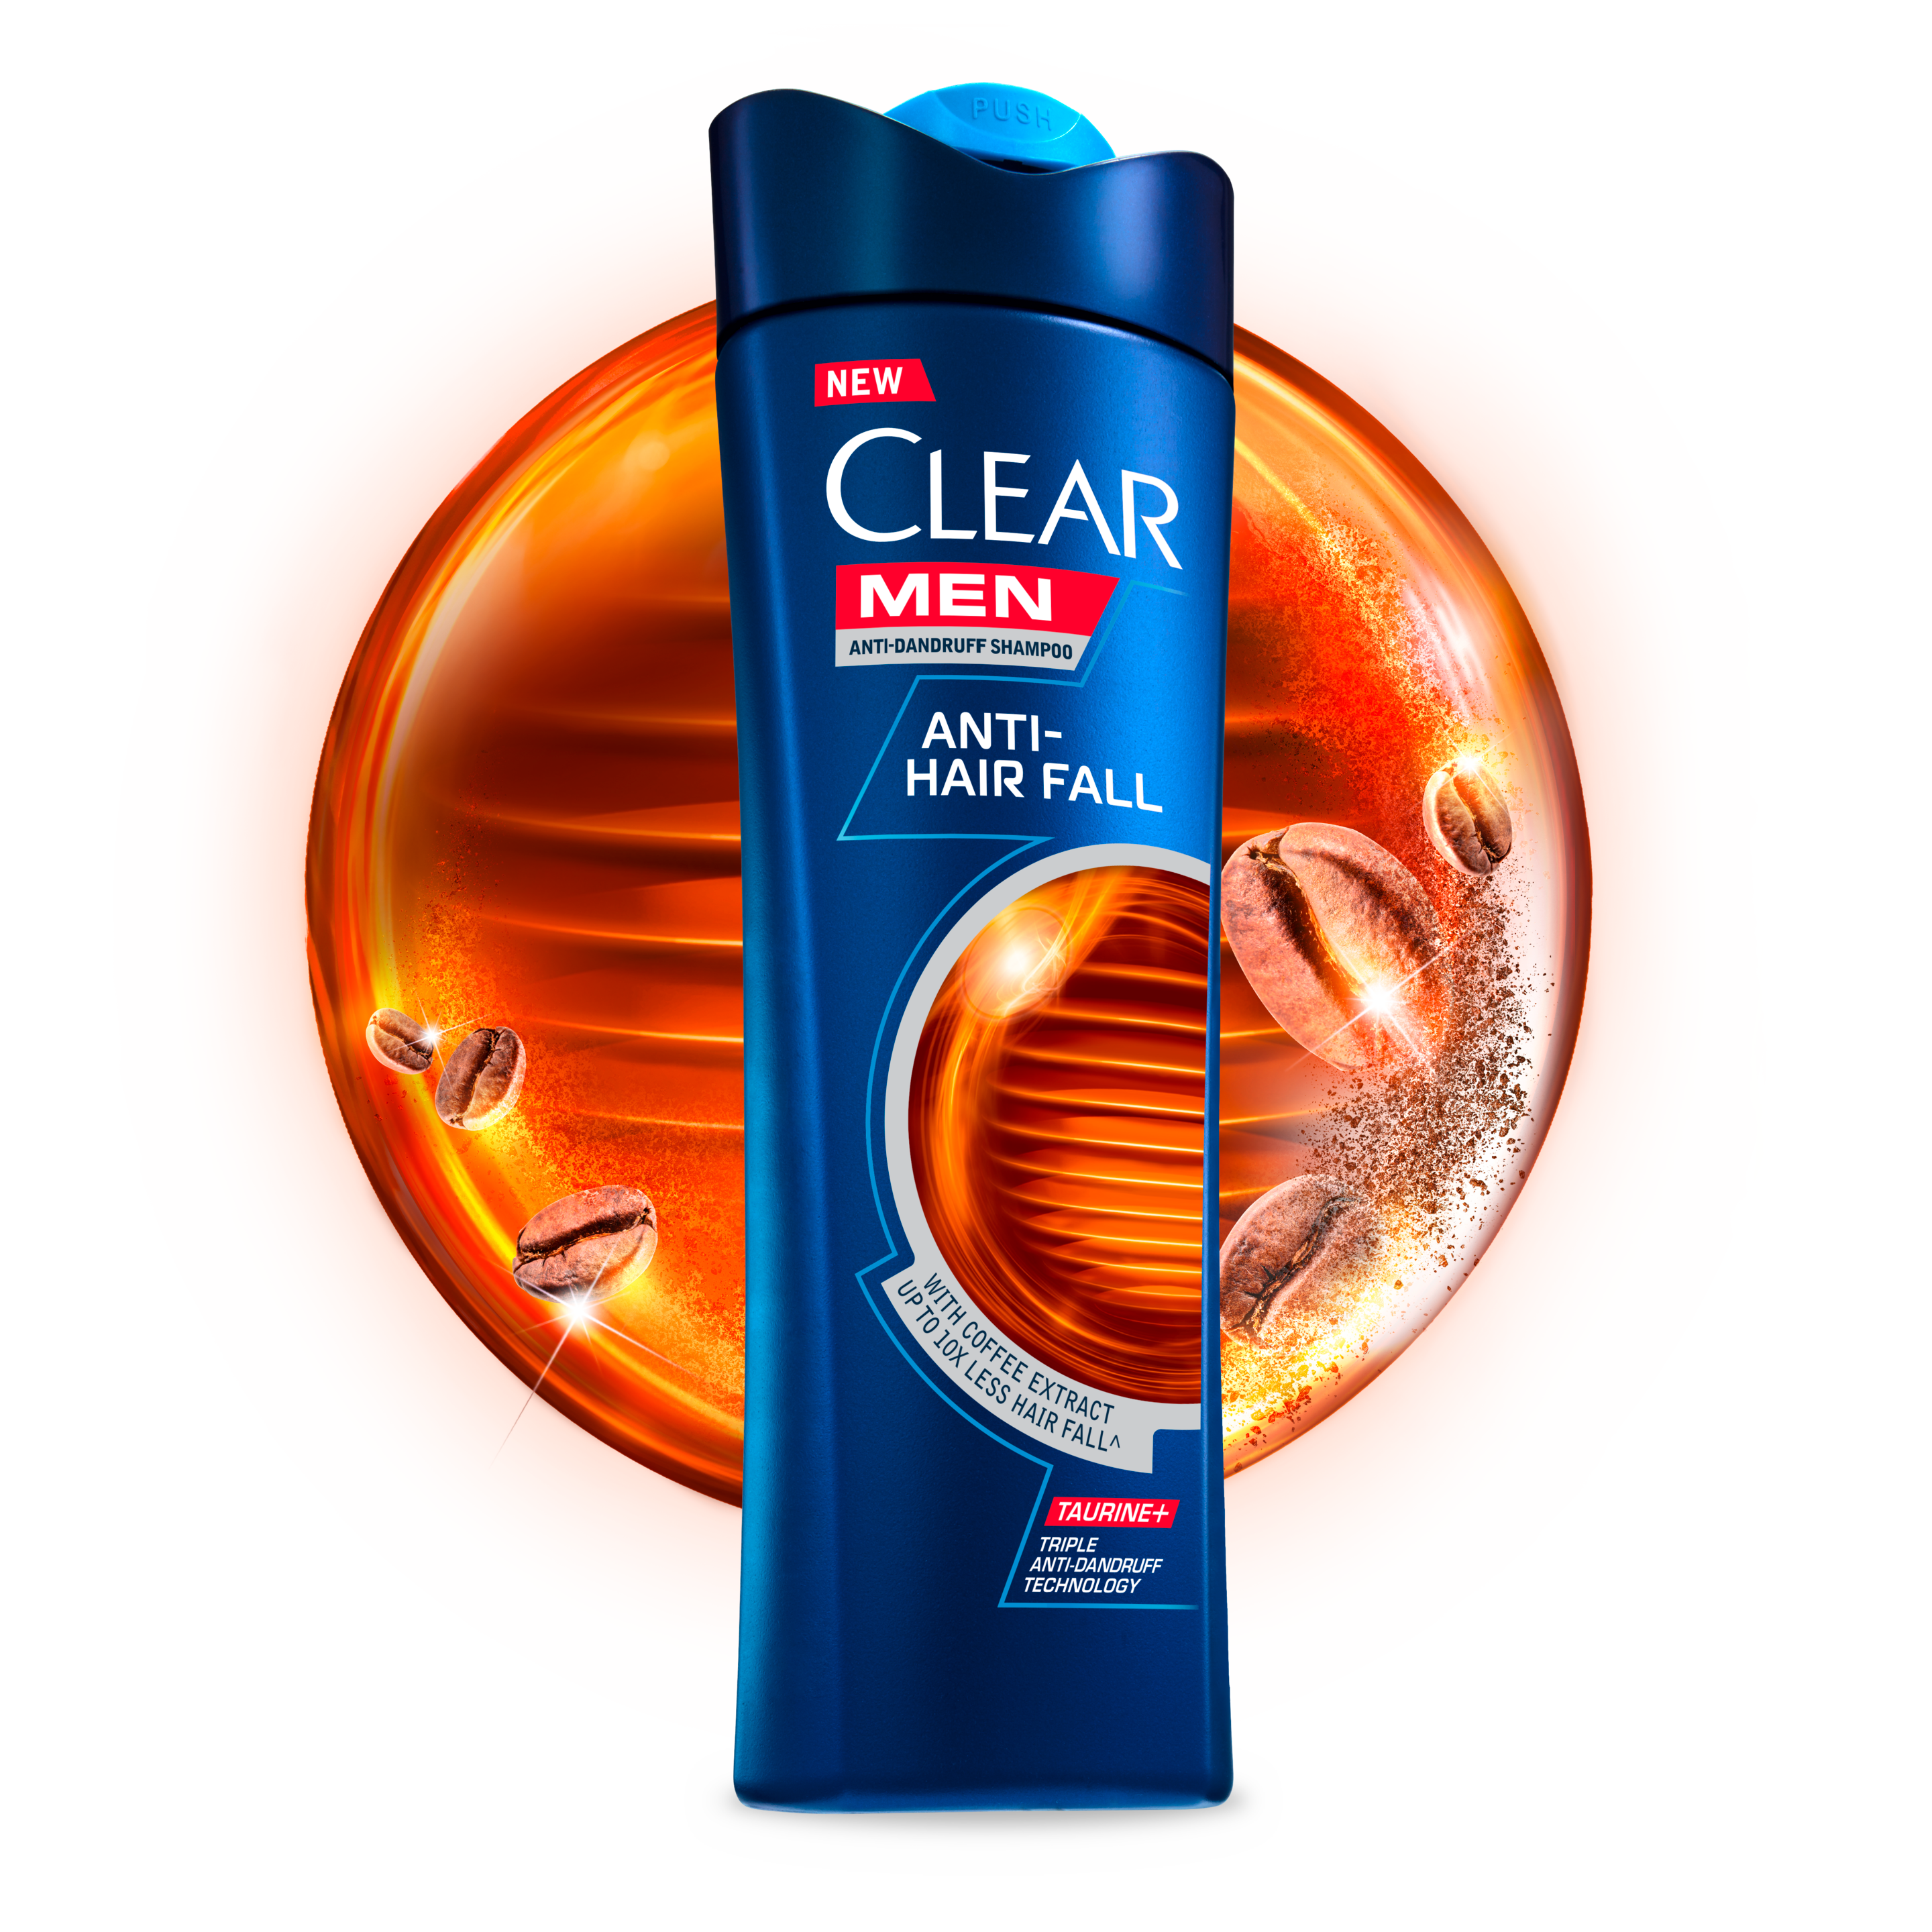 CLEAR Men Anti-Hair Fall Anti-dandruff shampoo Text